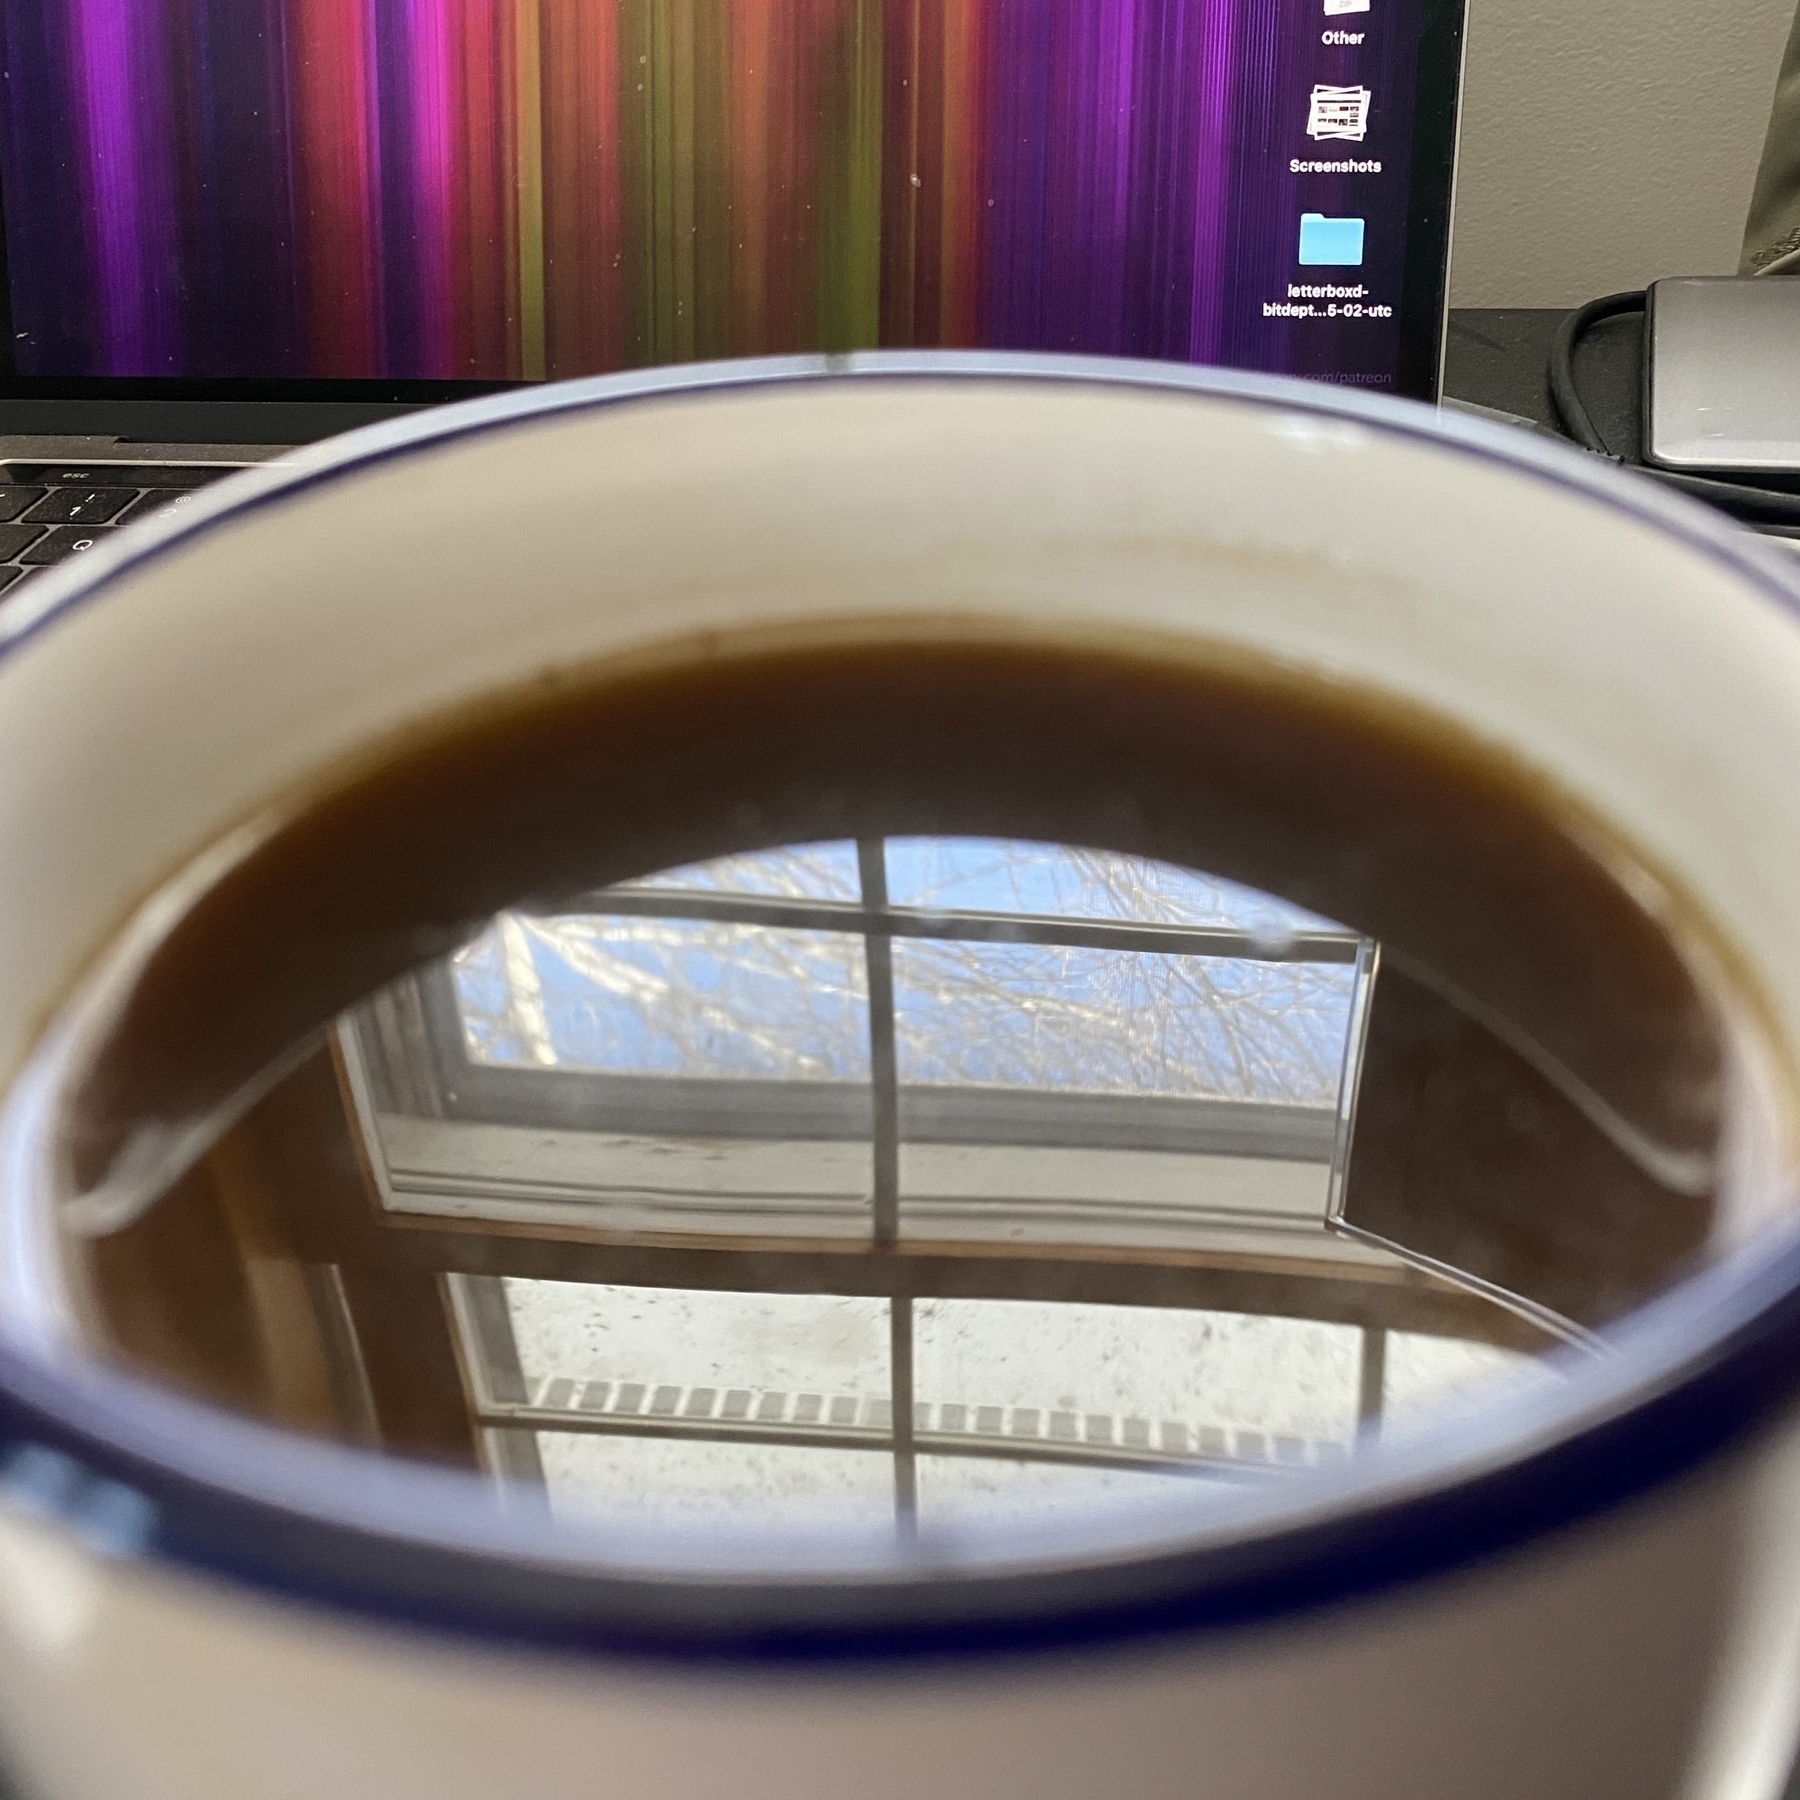 Window reflected in coffee in mug.